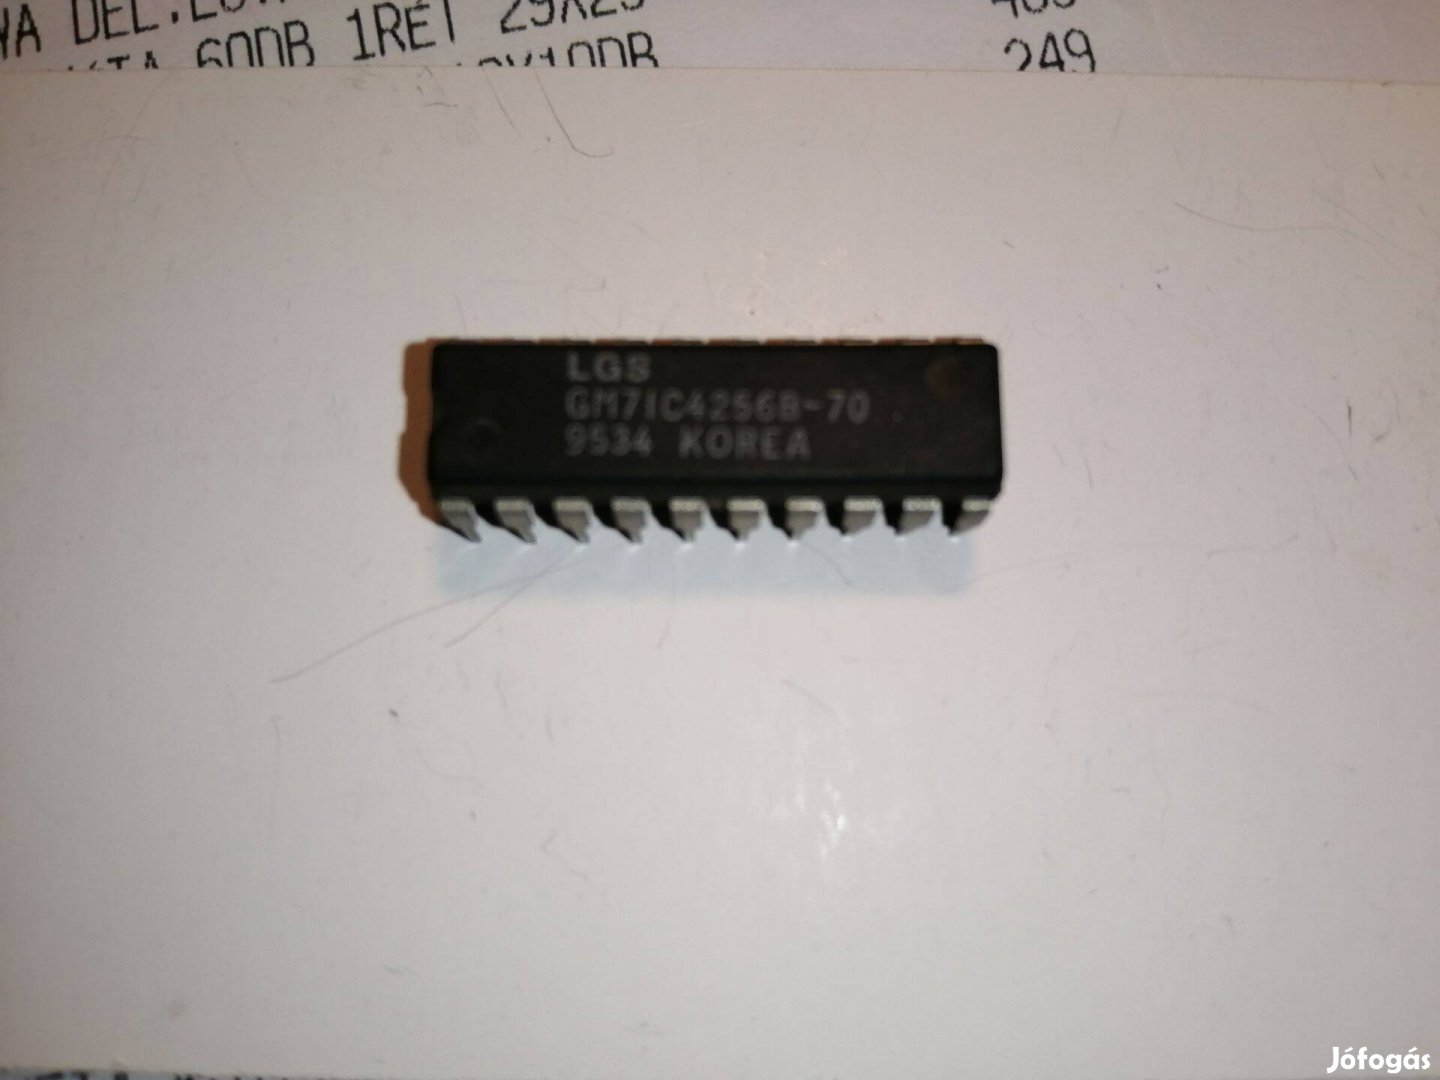 GM71C4256B - 70 Chip